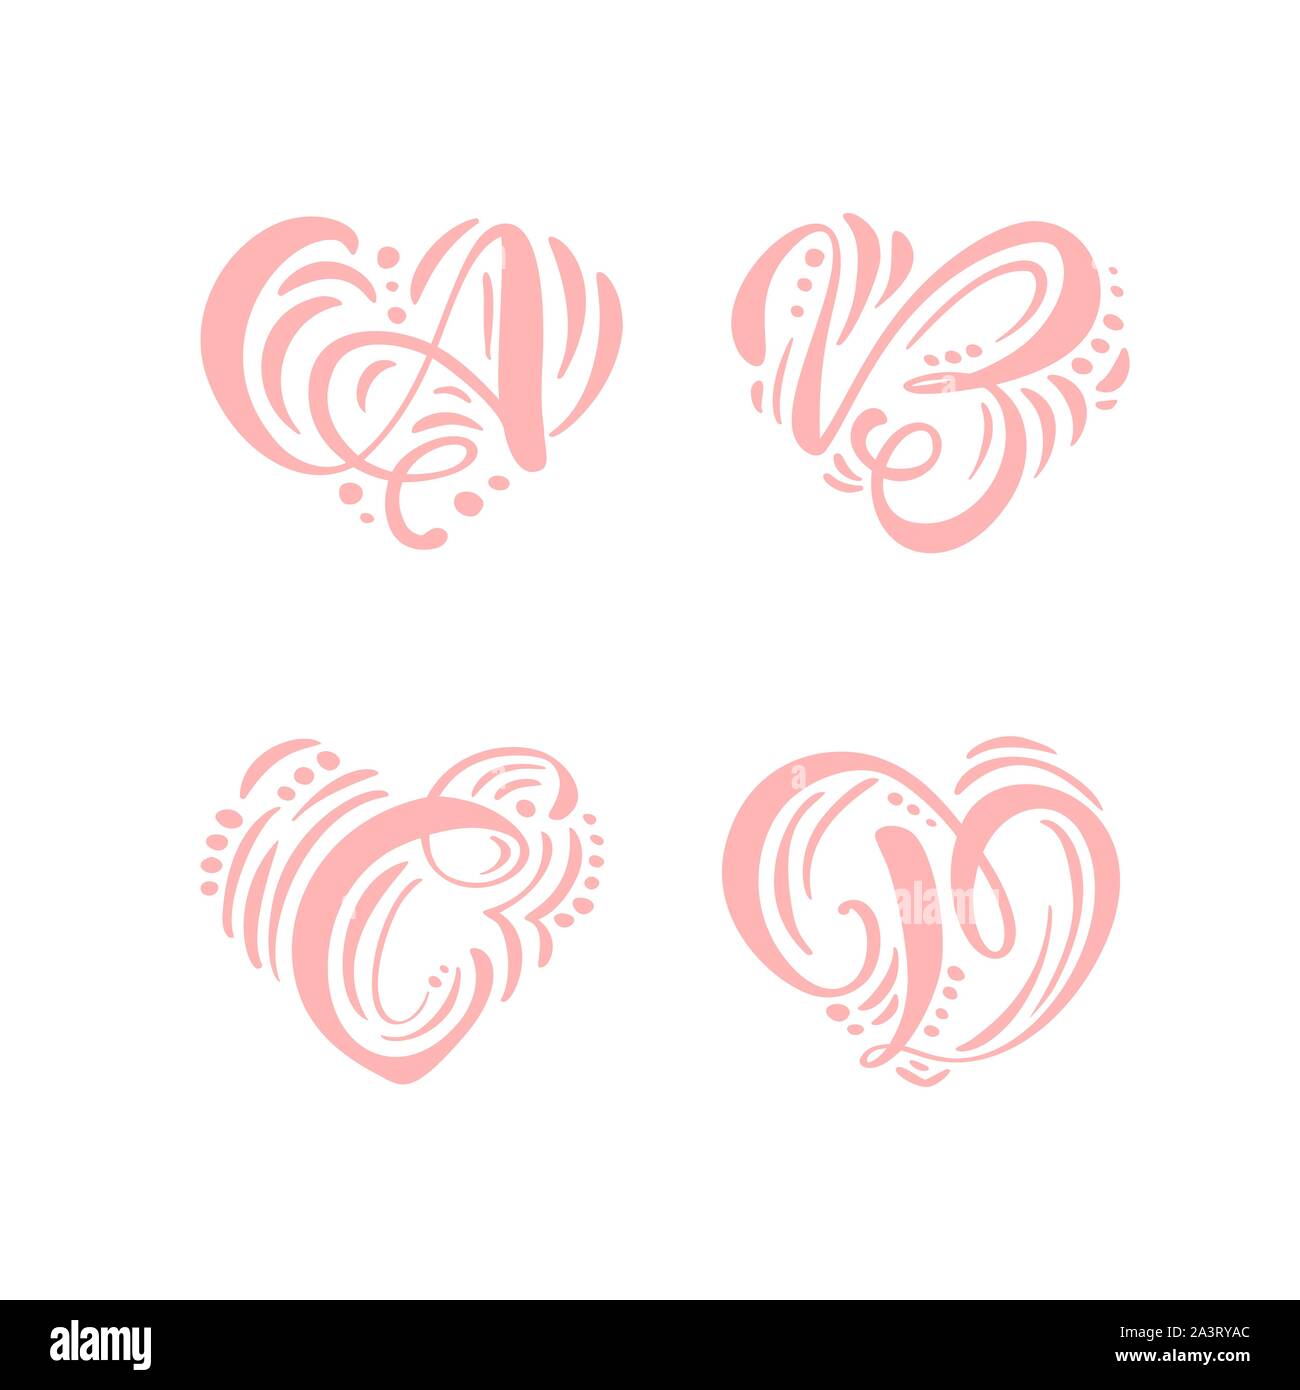 Amor del corazón dibujado a mano vector floral escandinavo caligráfico A, B, C, D, logo. Hand Lettering letras mayúsculas A, B, C, D, con curl. Floral de boda Ilustración del Vector